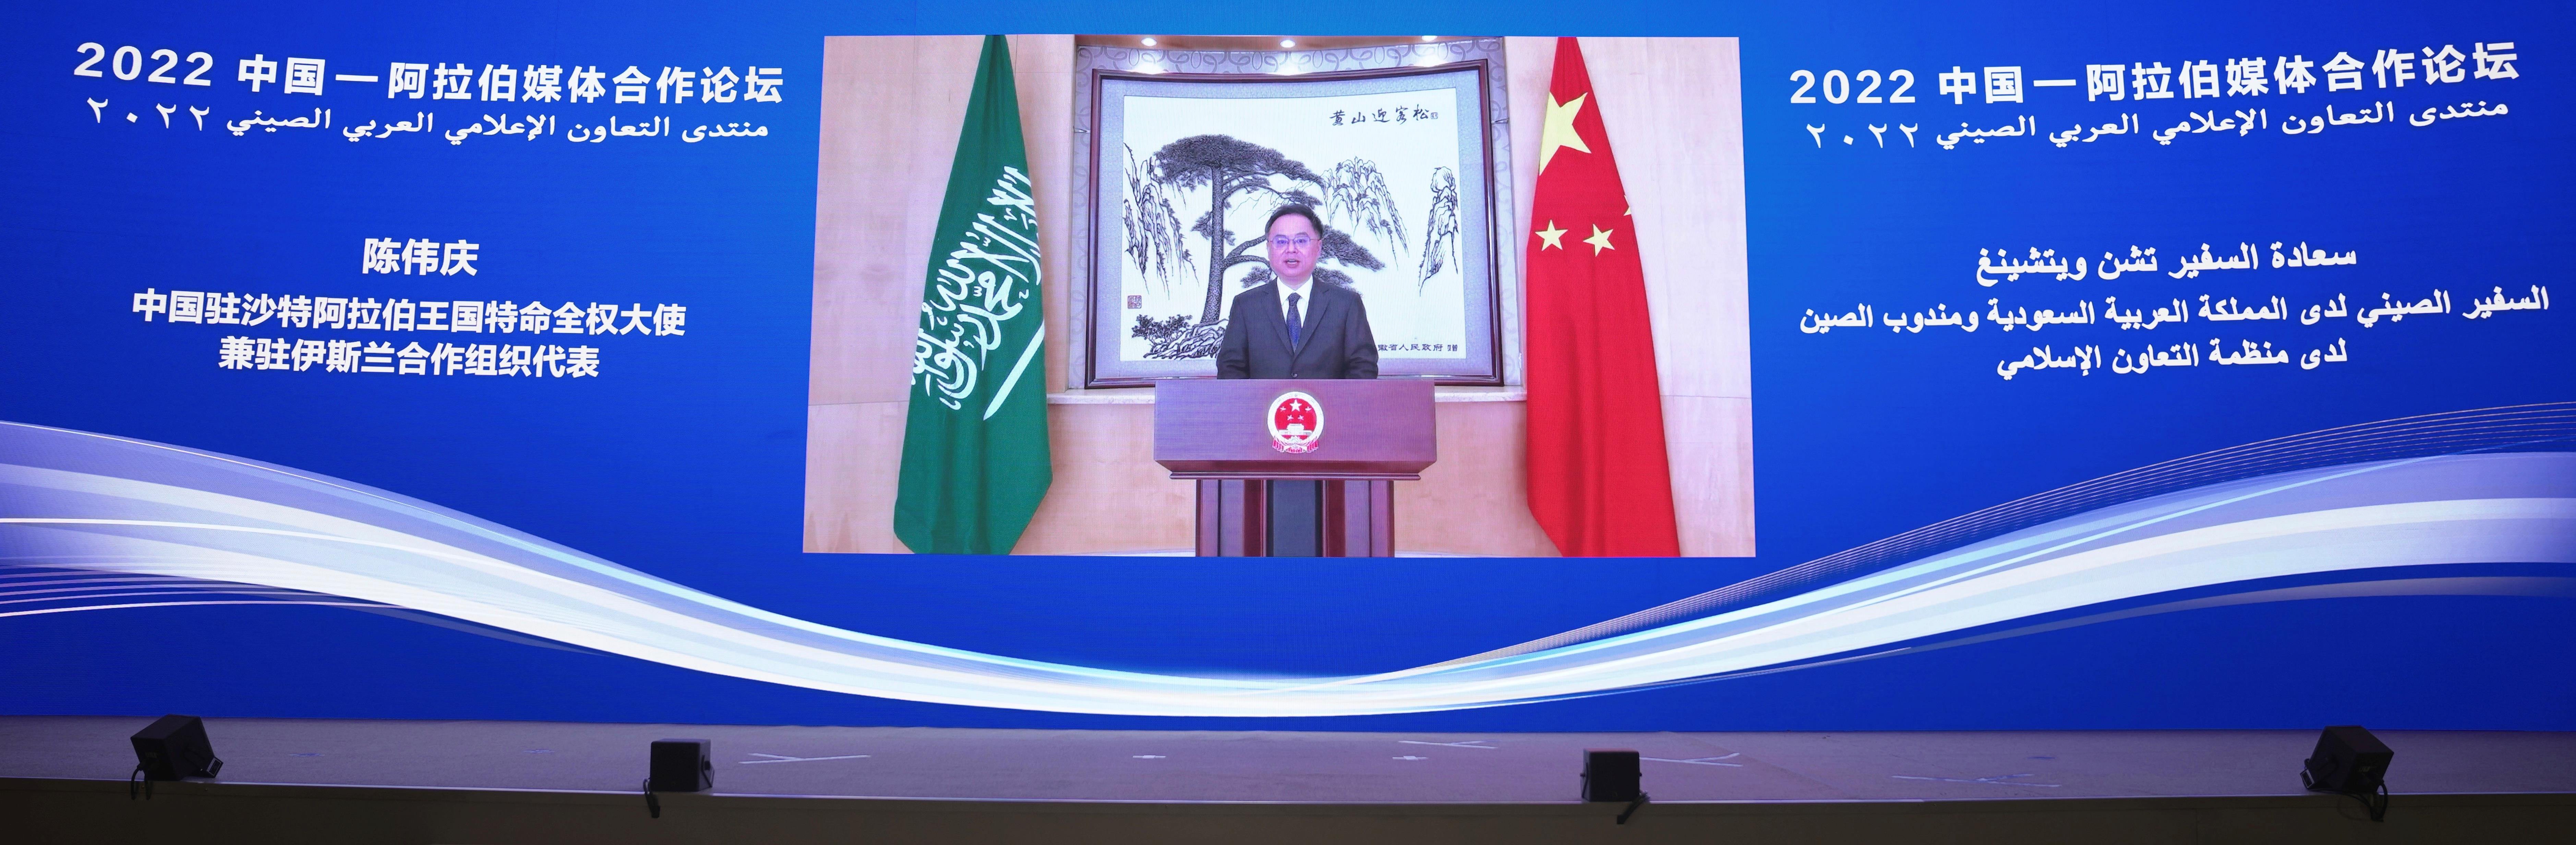 △中國駐沙特大使兼駐伊斯蘭合作組織代表陳偉慶